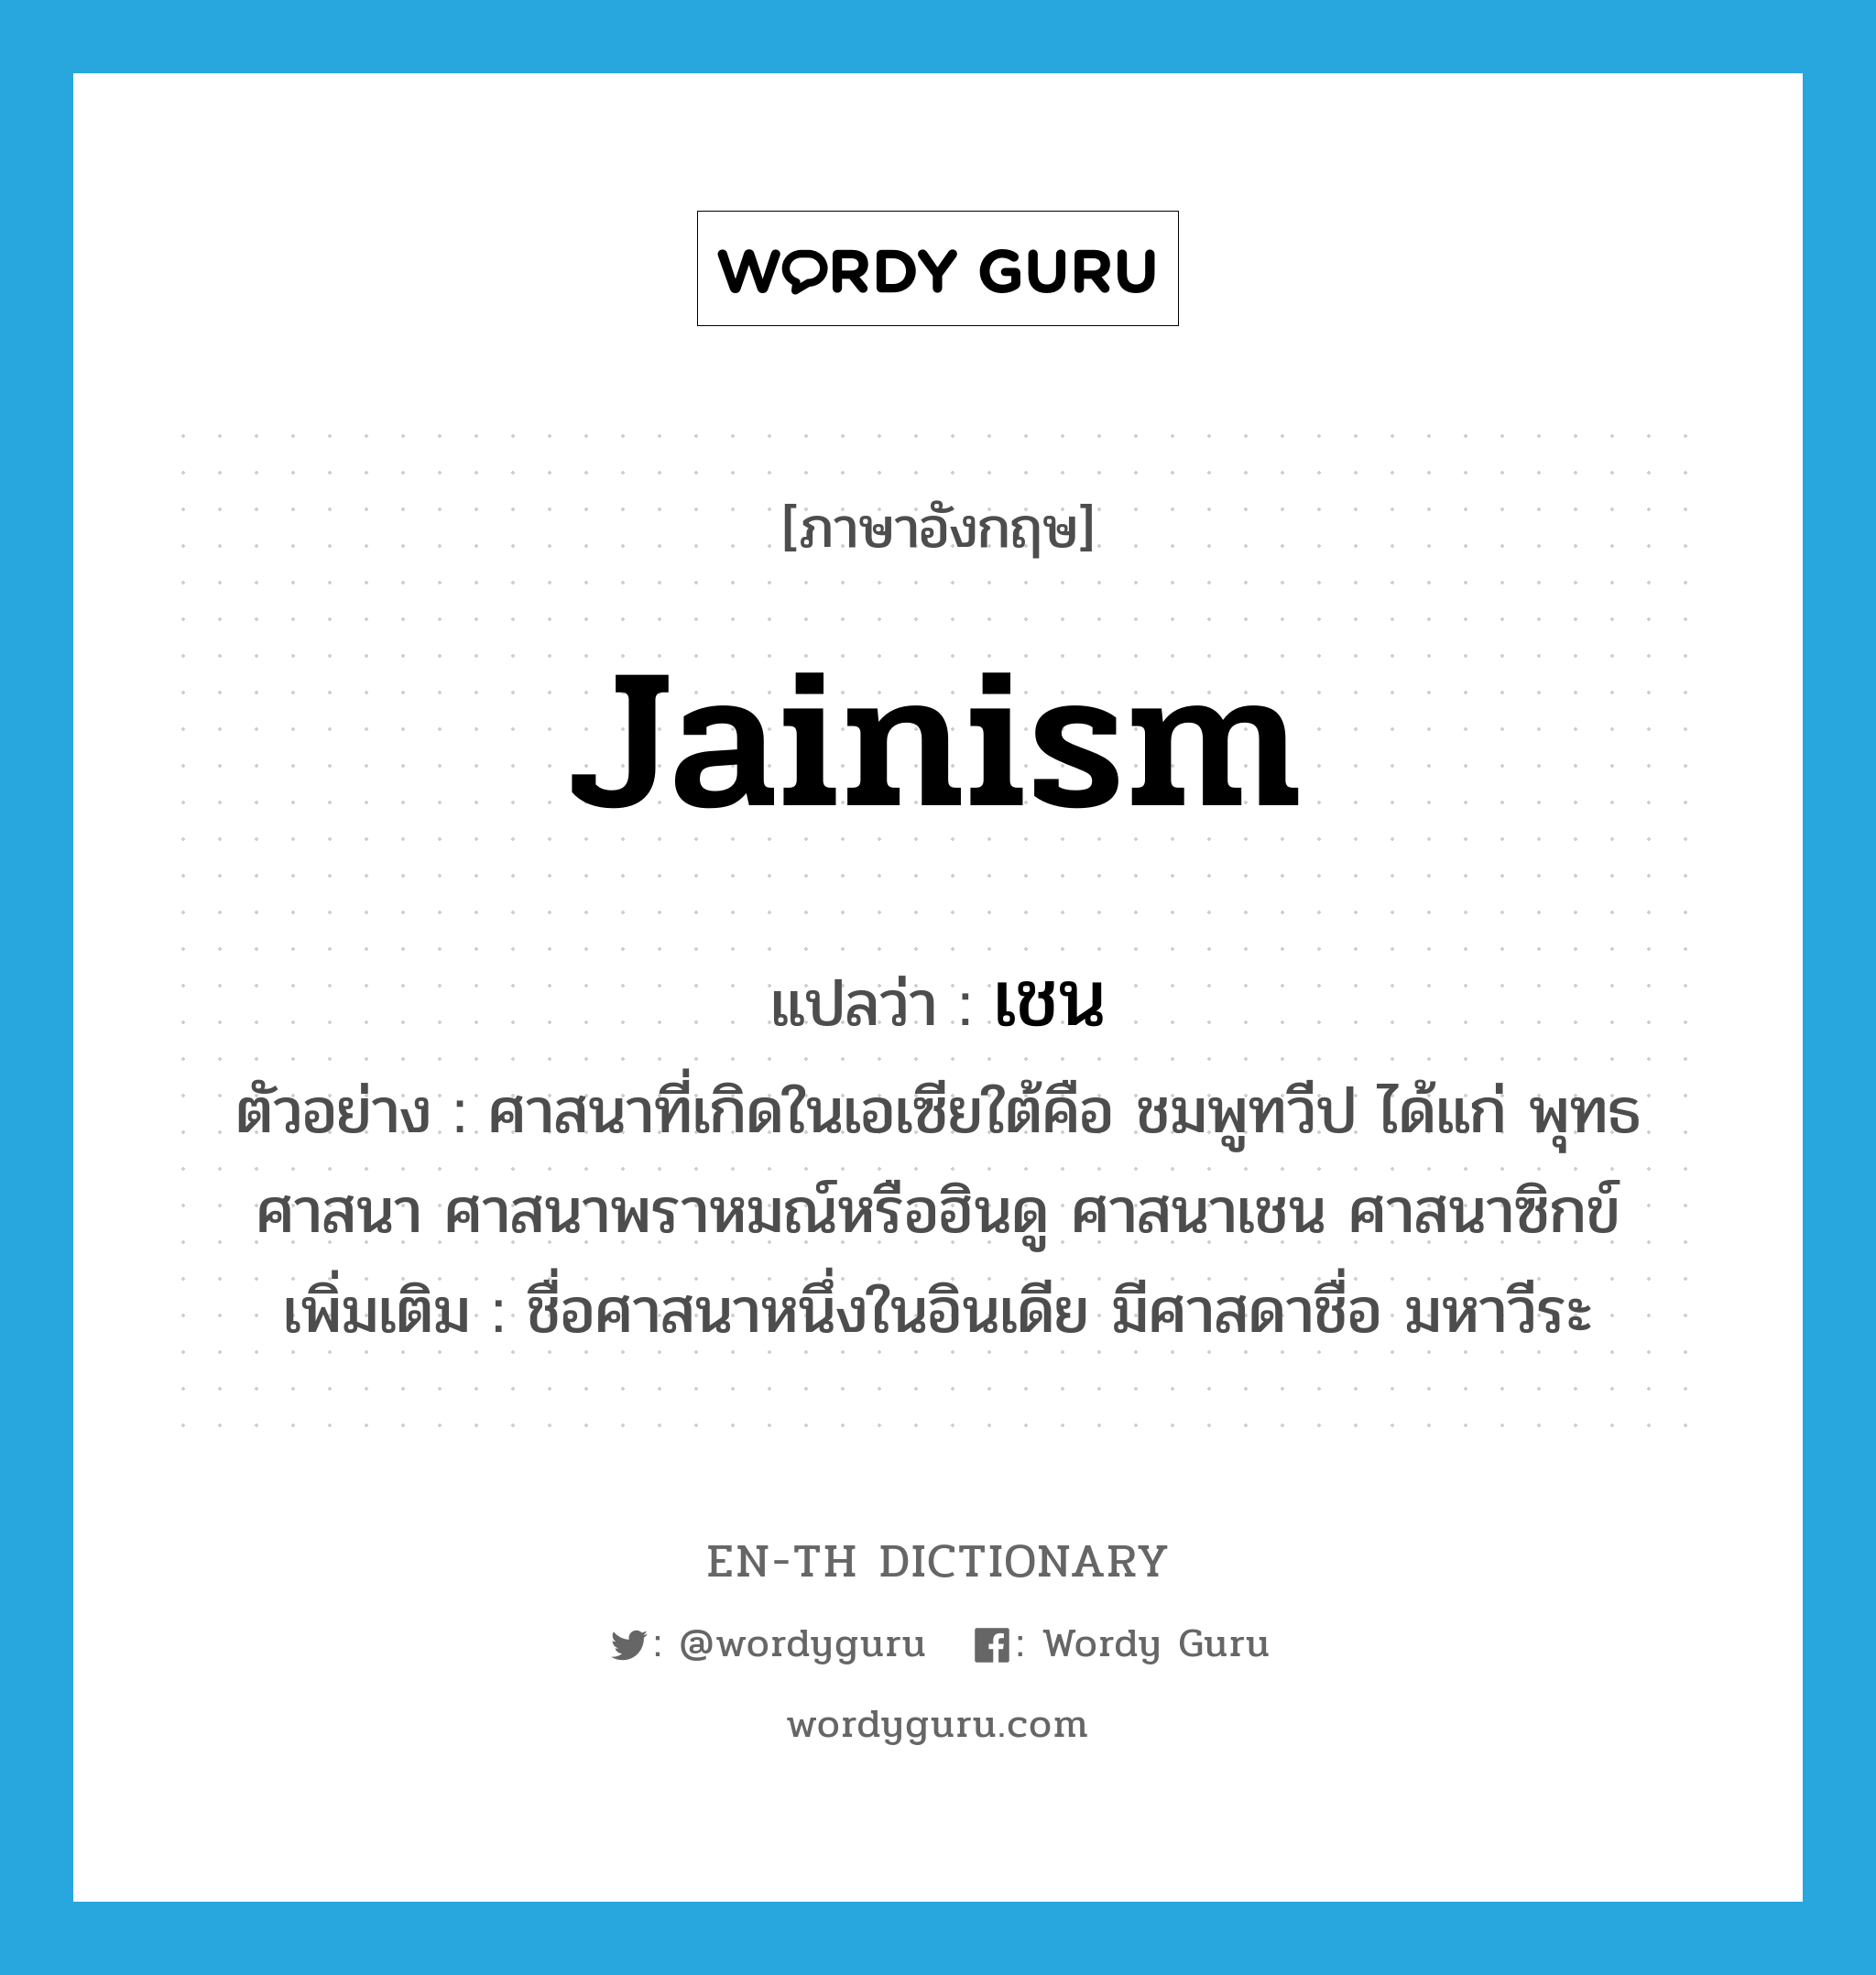 Jainism แปลว่า?, คำศัพท์ภาษาอังกฤษ Jainism แปลว่า เชน ประเภท N ตัวอย่าง ศาสนาที่เกิดในเอเซียใต้คือ ชมพูทวีป ได้แก่ พุทธศาสนา ศาสนาพราหมณ์หรือฮินดู ศาสนาเชน ศาสนาซิกข์ เพิ่มเติม ชื่อศาสนาหนึ่งในอินเดีย มีศาสดาชื่อ มหาวีระ หมวด N